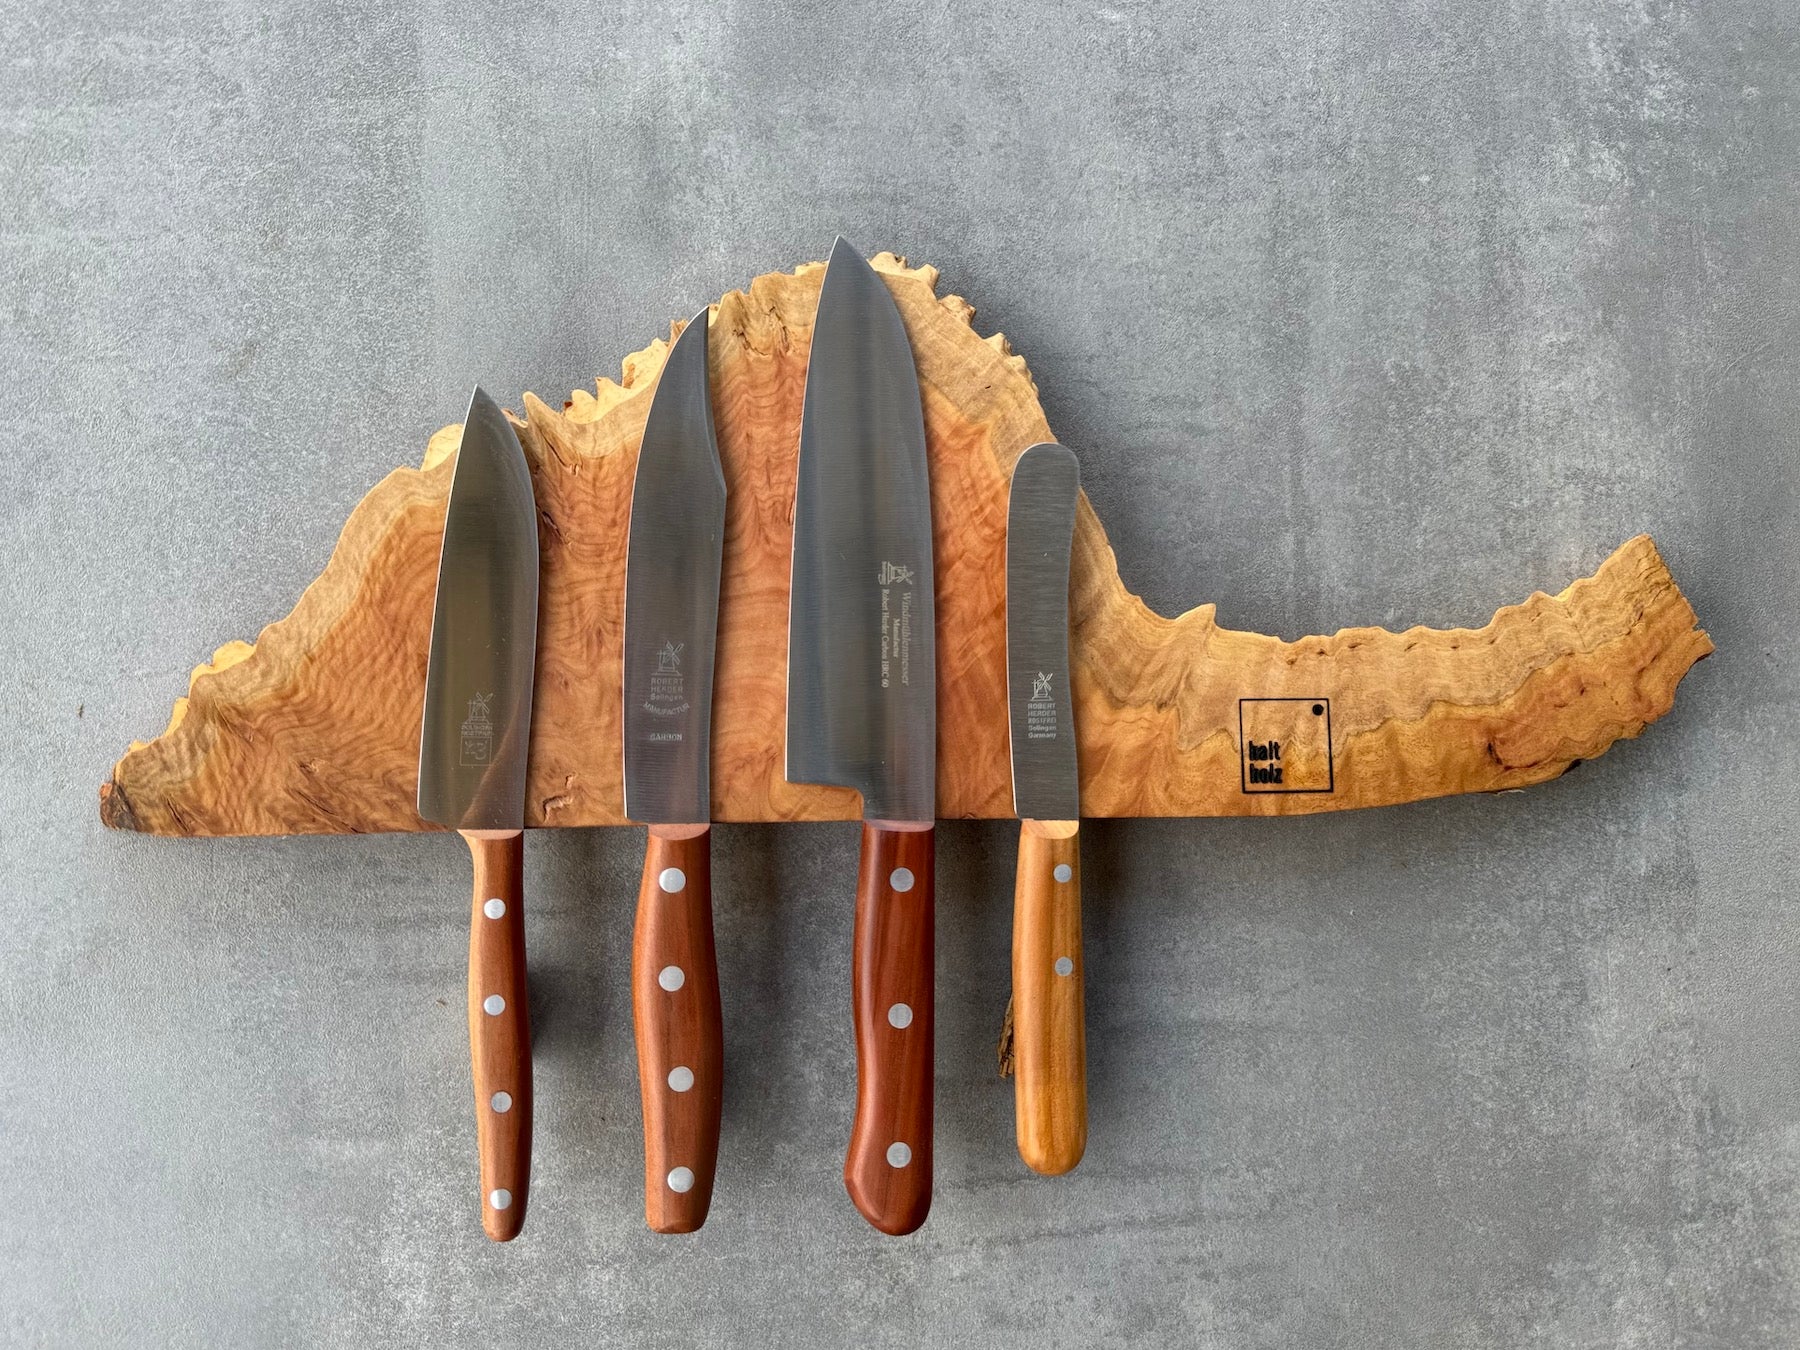 Australischer Goldfield Edelholz Messerleiste für 4 Messer an einer Betonwand. Dekoriert mit vier verschiedenen Windmühlenmesser Kochmesser.